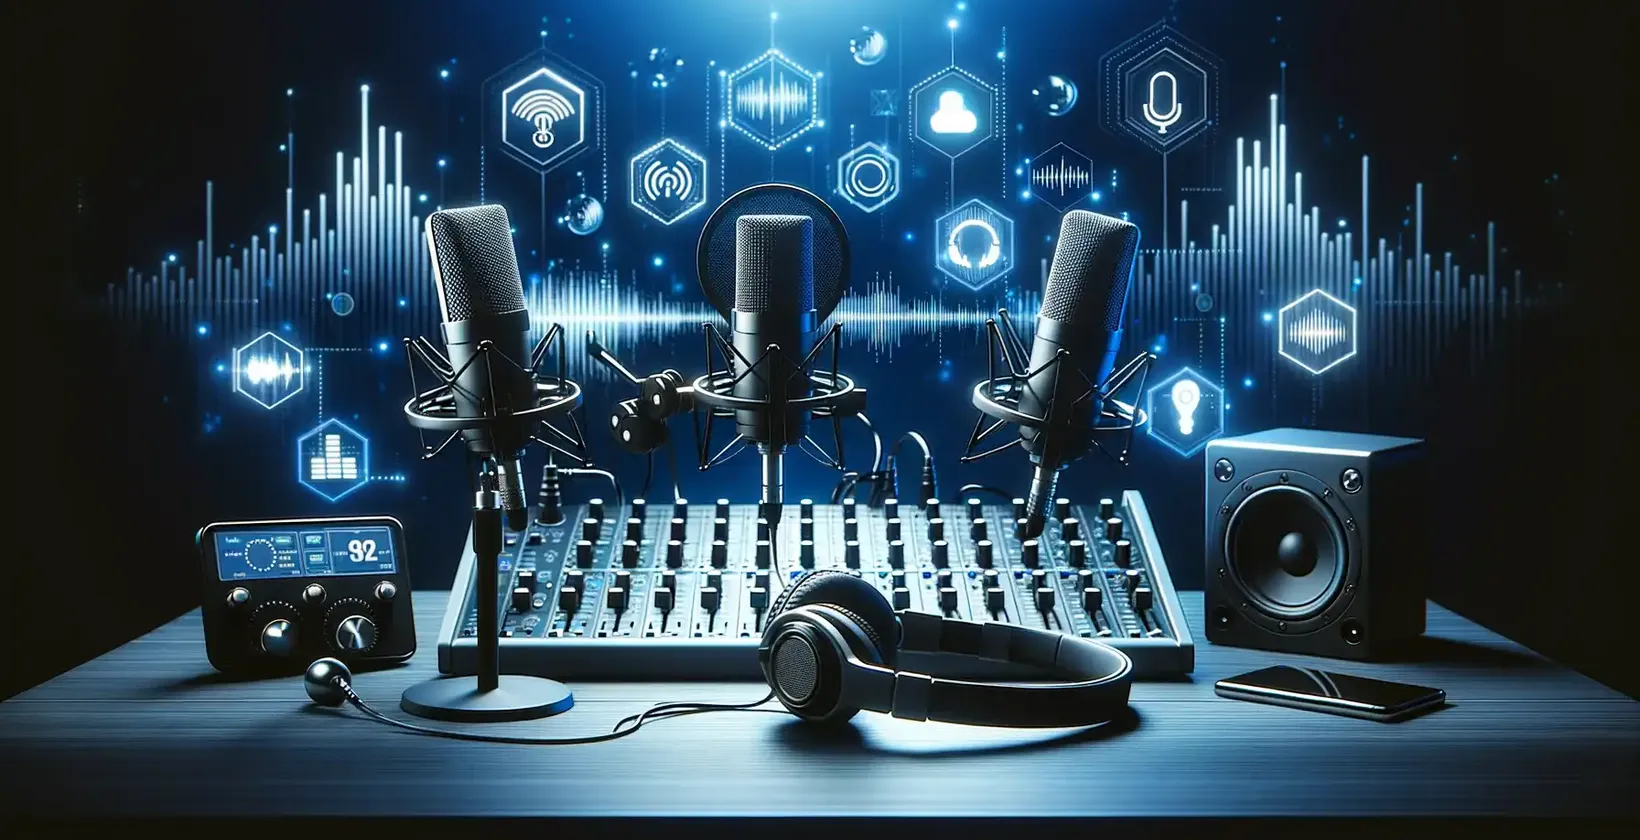 Equipamento de áudio e microfone colocados em uma mesa para transcrição de podcasts, uma estratégia para atrair mais clientes.